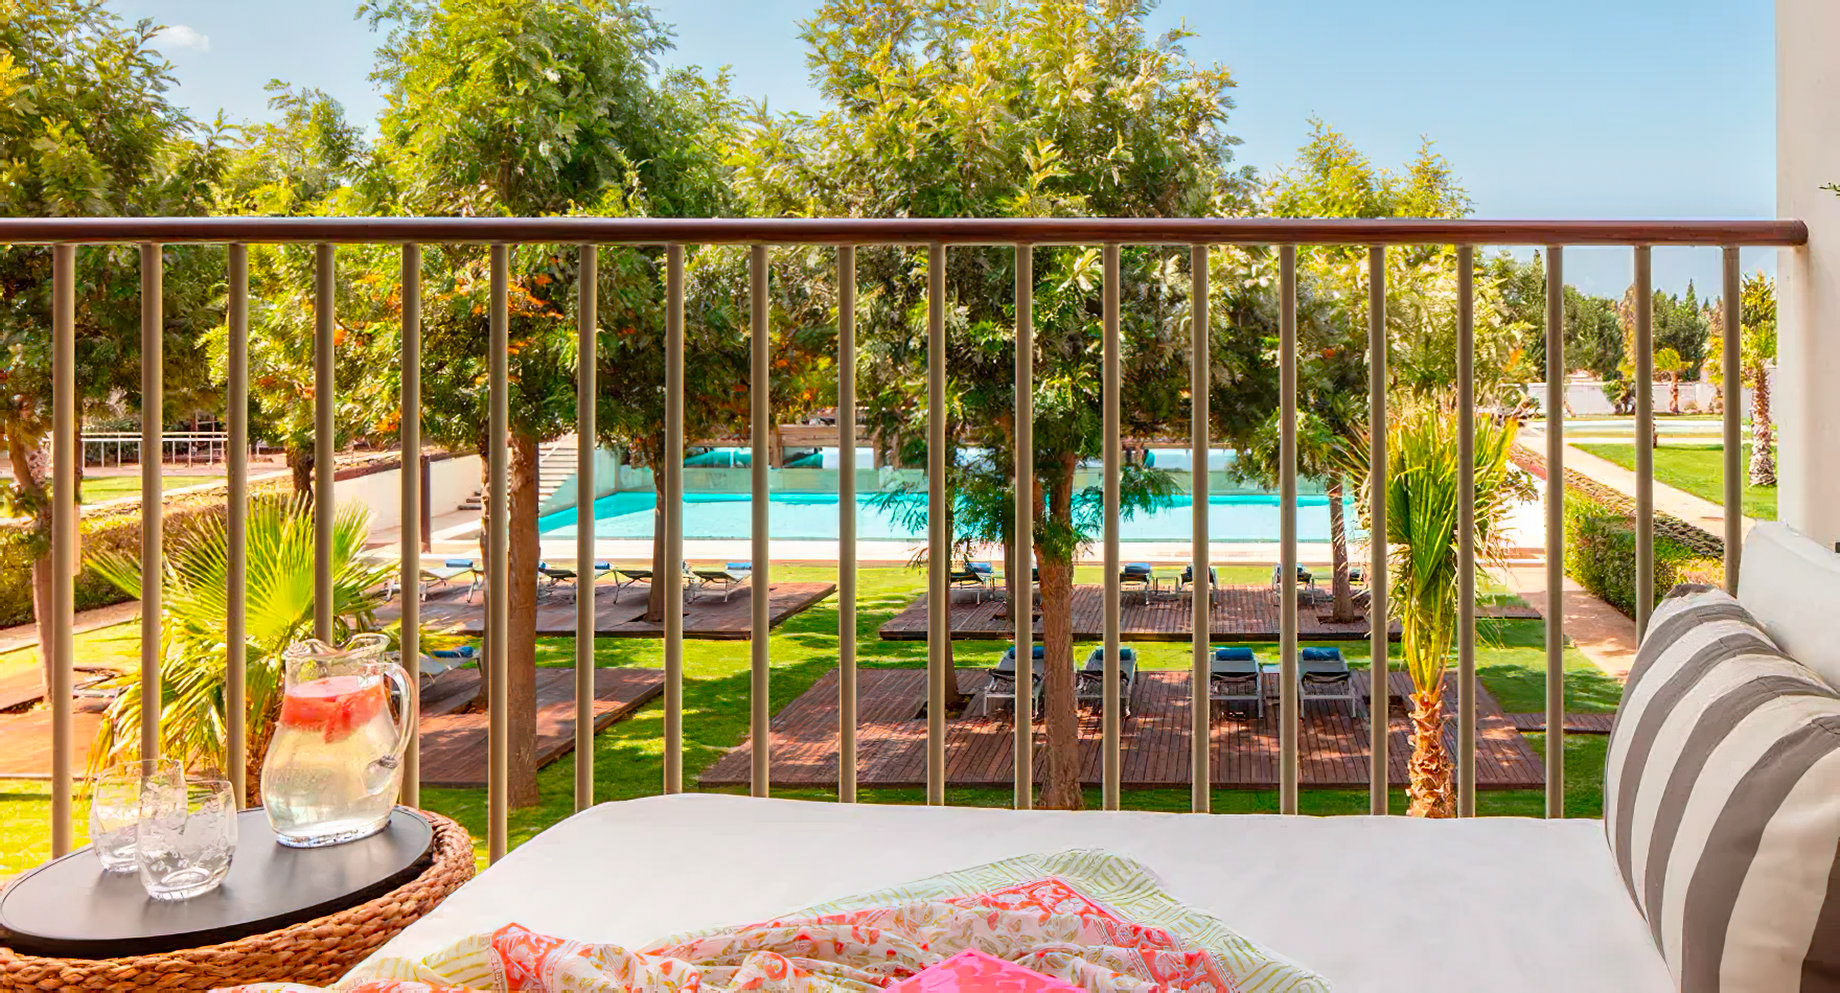 Anantara Vilamoura Algarve Resort – Portugal – Deluxe Family Pool View Room